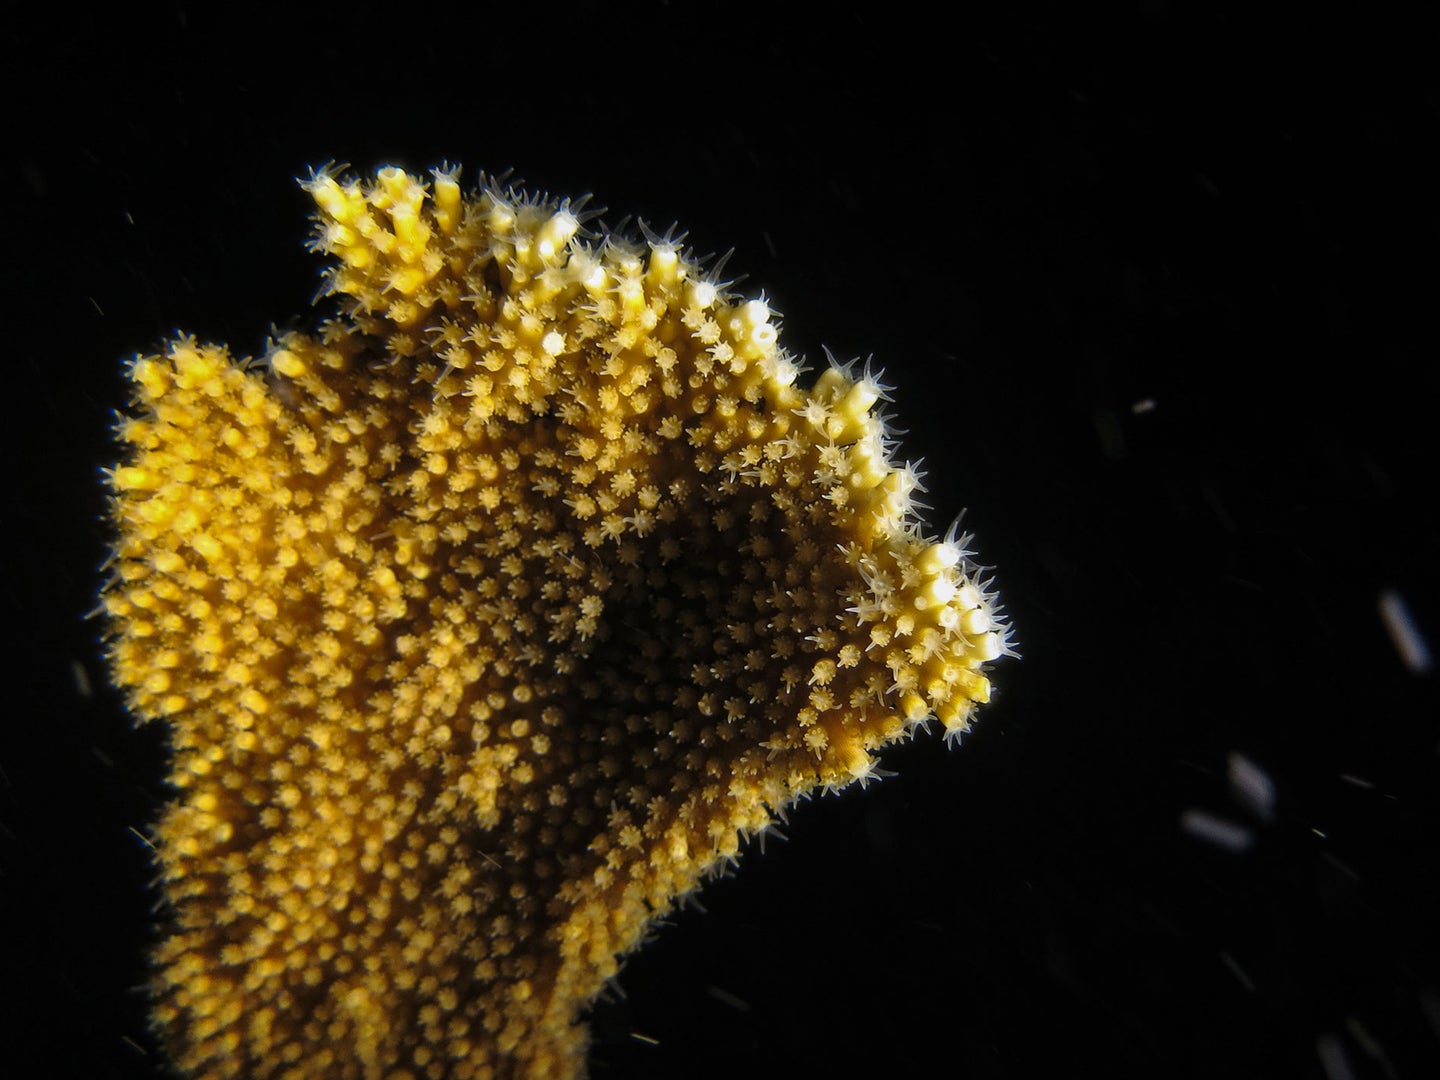 Lab-grown coral